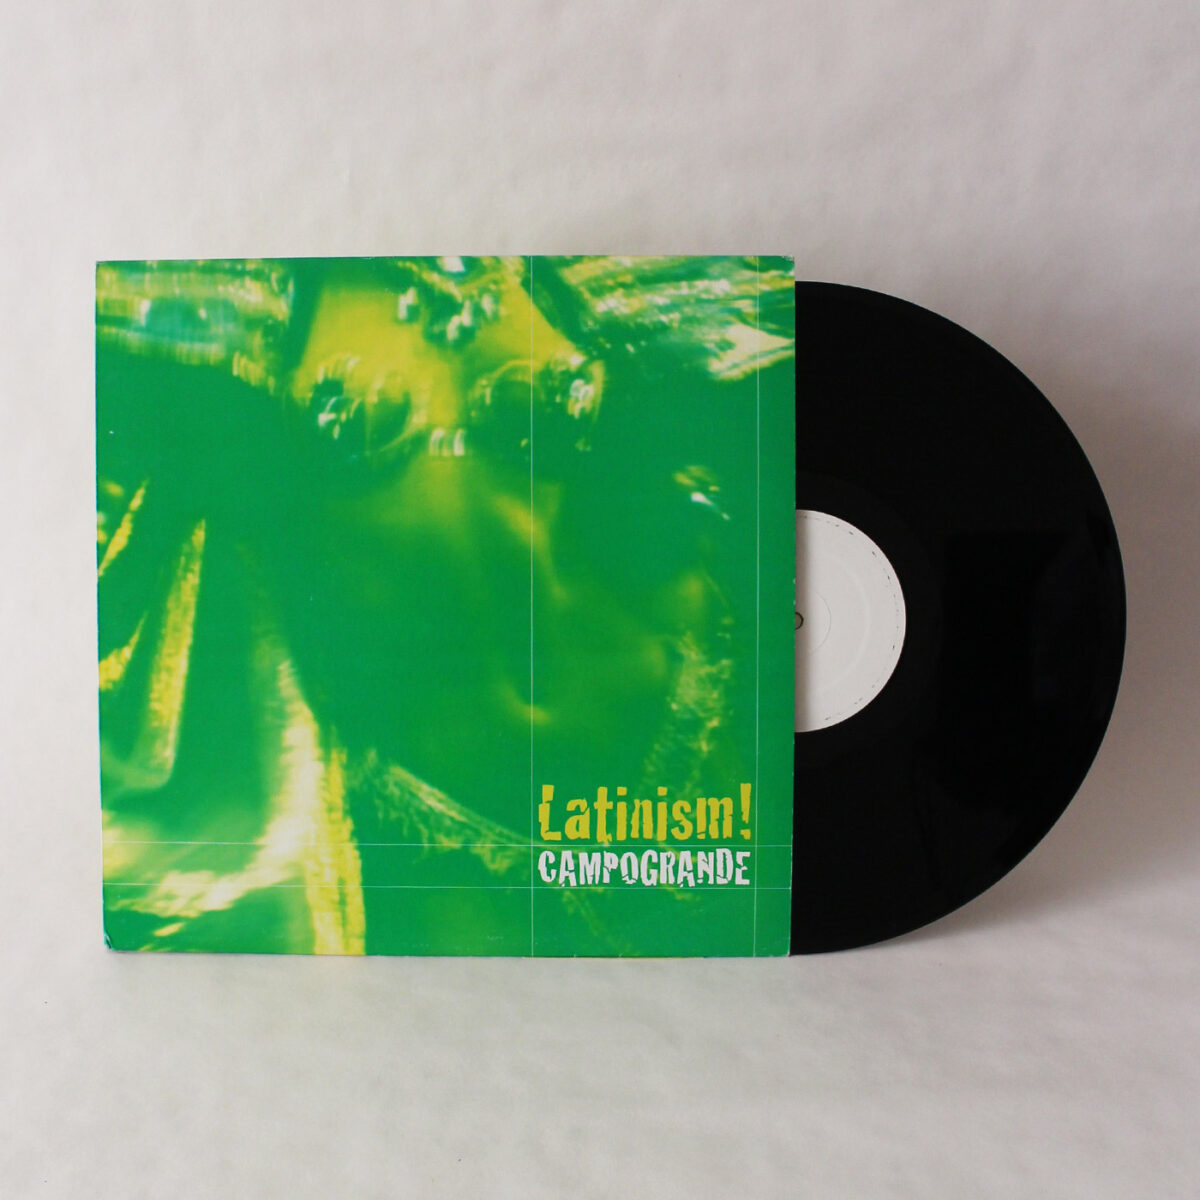 Campogrande ‎– Latinism! Ep - vinyl bazar|Campogrande ‎– Latinism! Ep - vinyl bazar|Campogrande ‎– Latinism! Ep - vinyl bazar